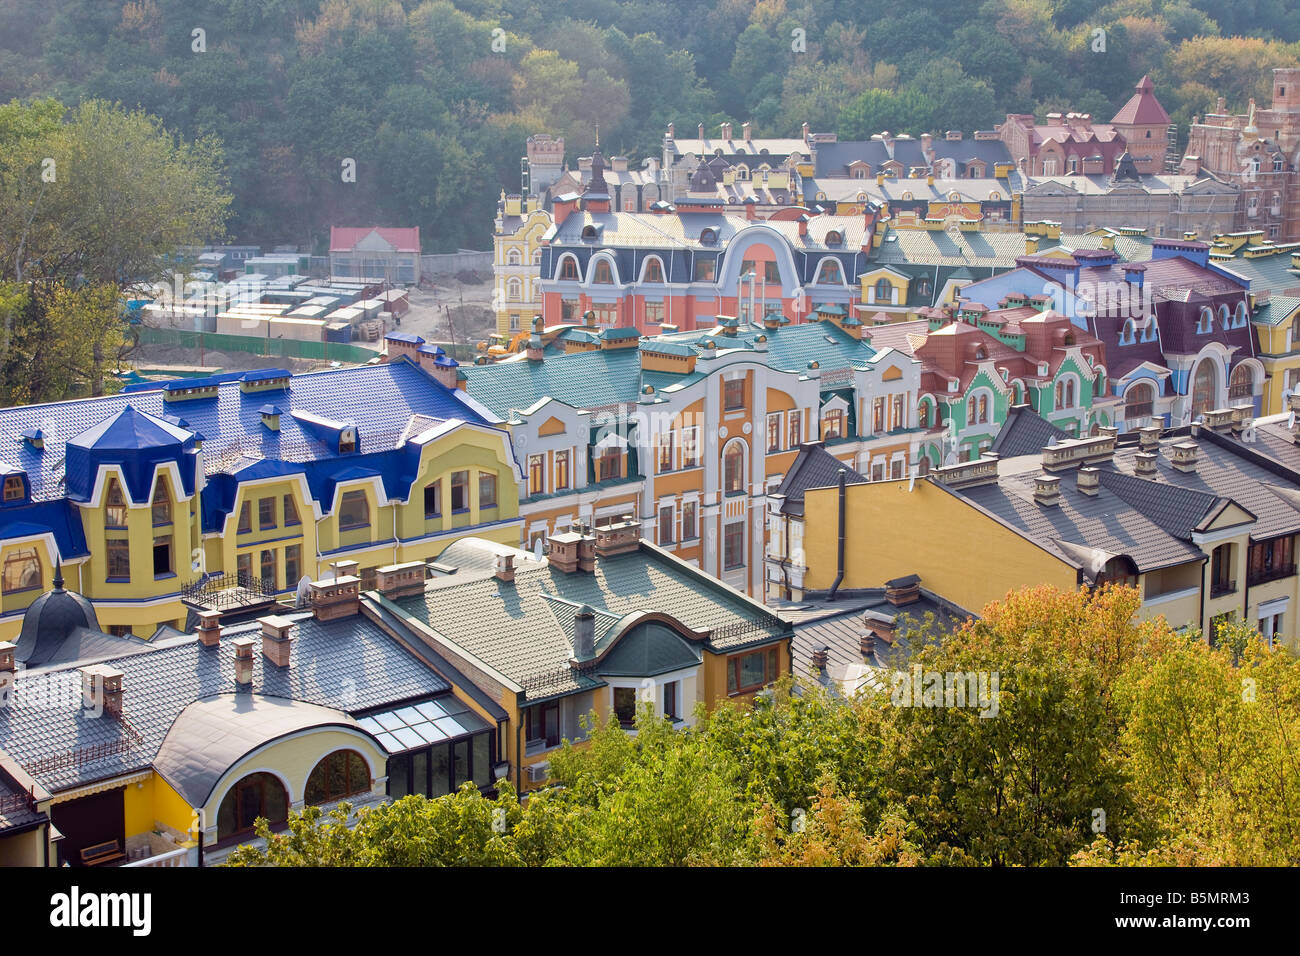 Erhöhten Blick über farbenfrohe Gebäude mit mehrfarbigen Dächer in einem neuen Wohngebiet von Kiew, Ukraine, Osteuropa Stockfoto